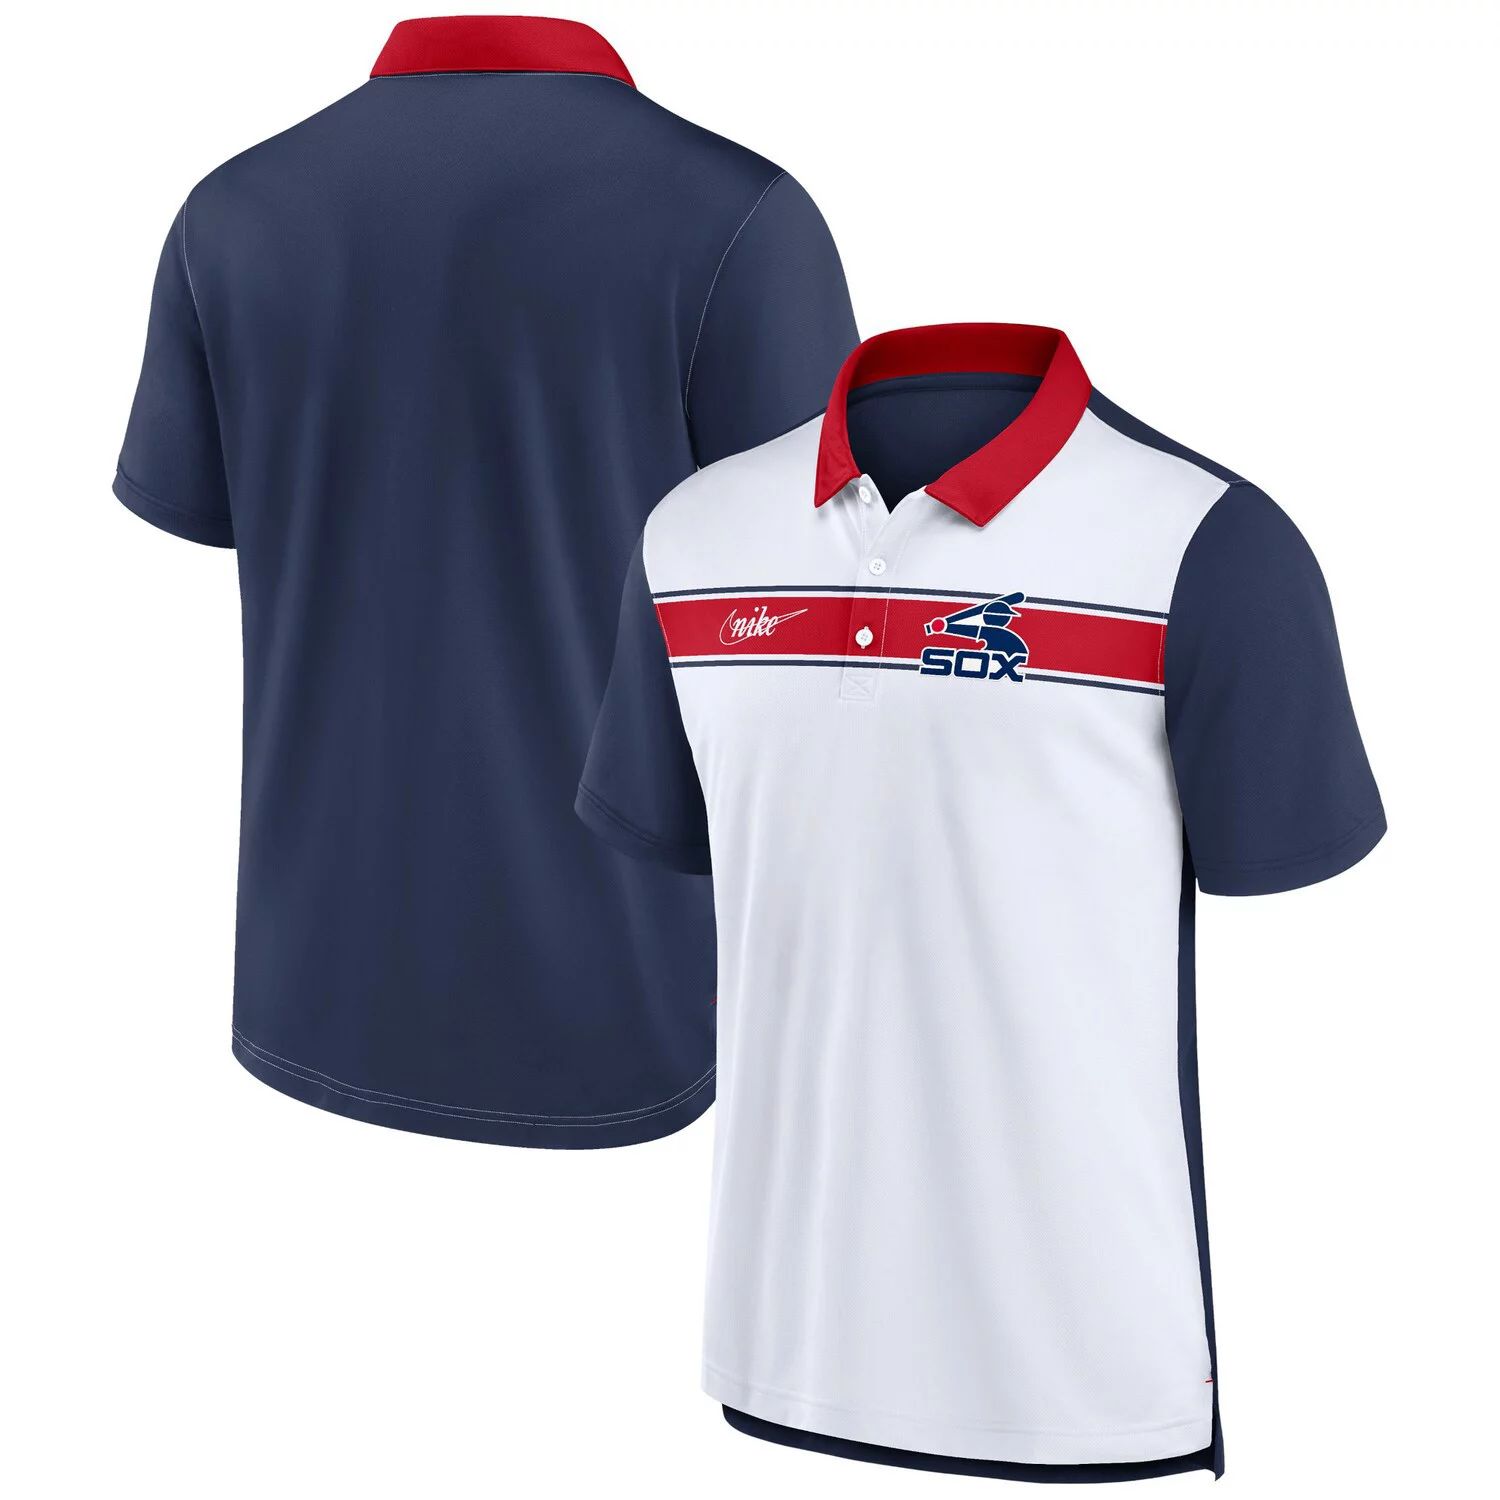 

Мужская рубашка-поло в полоску белого/темно-синего цвета Chicago White Sox Nike, Синий